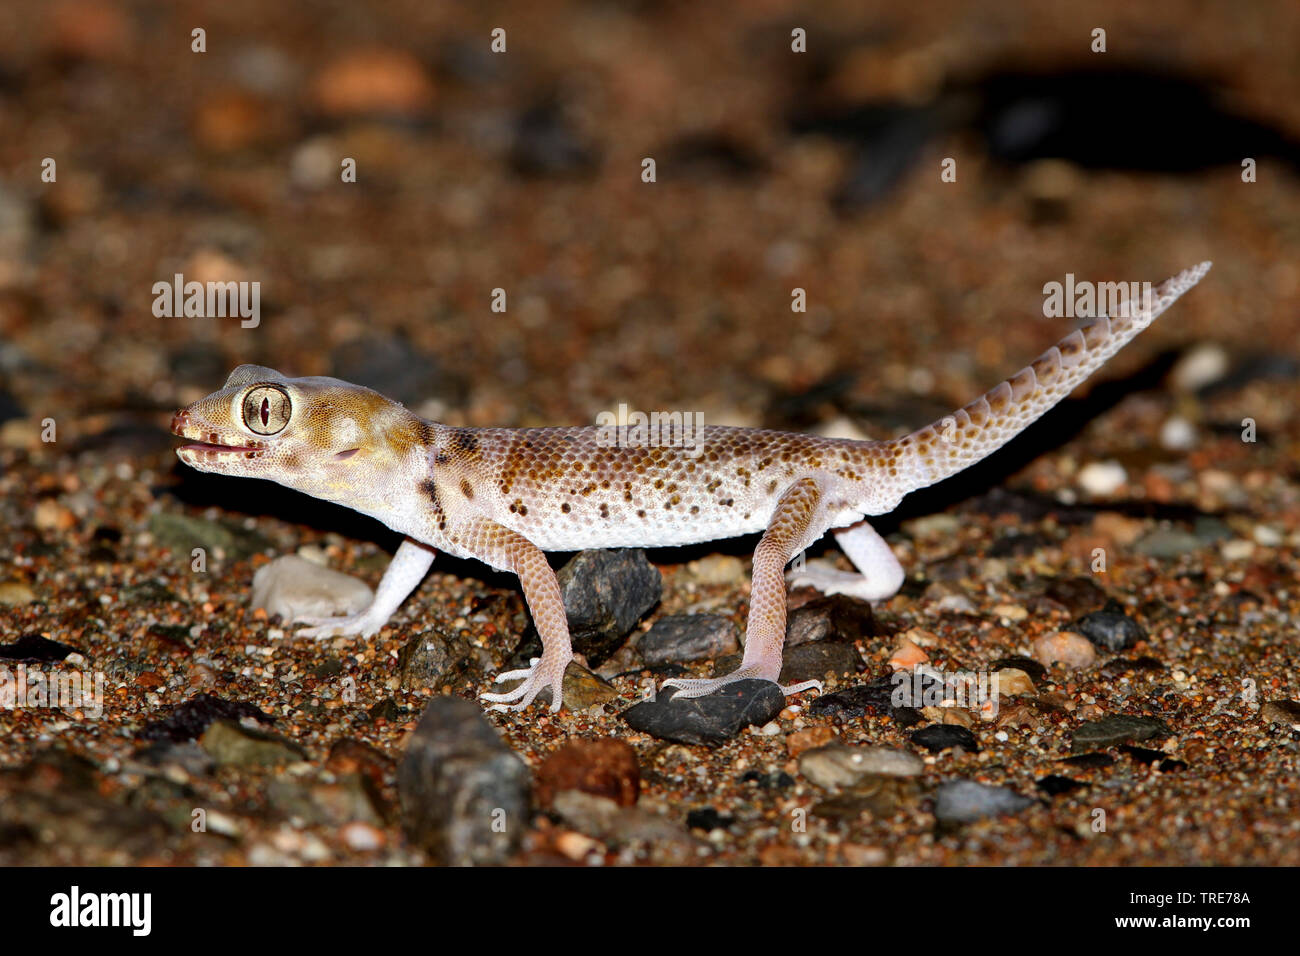 Plate-tailed Gecko, Przewalski's wonder Gecko (Teratoscincus przewalskii), on desert sand, Mongolia, Gobi Stock Photo